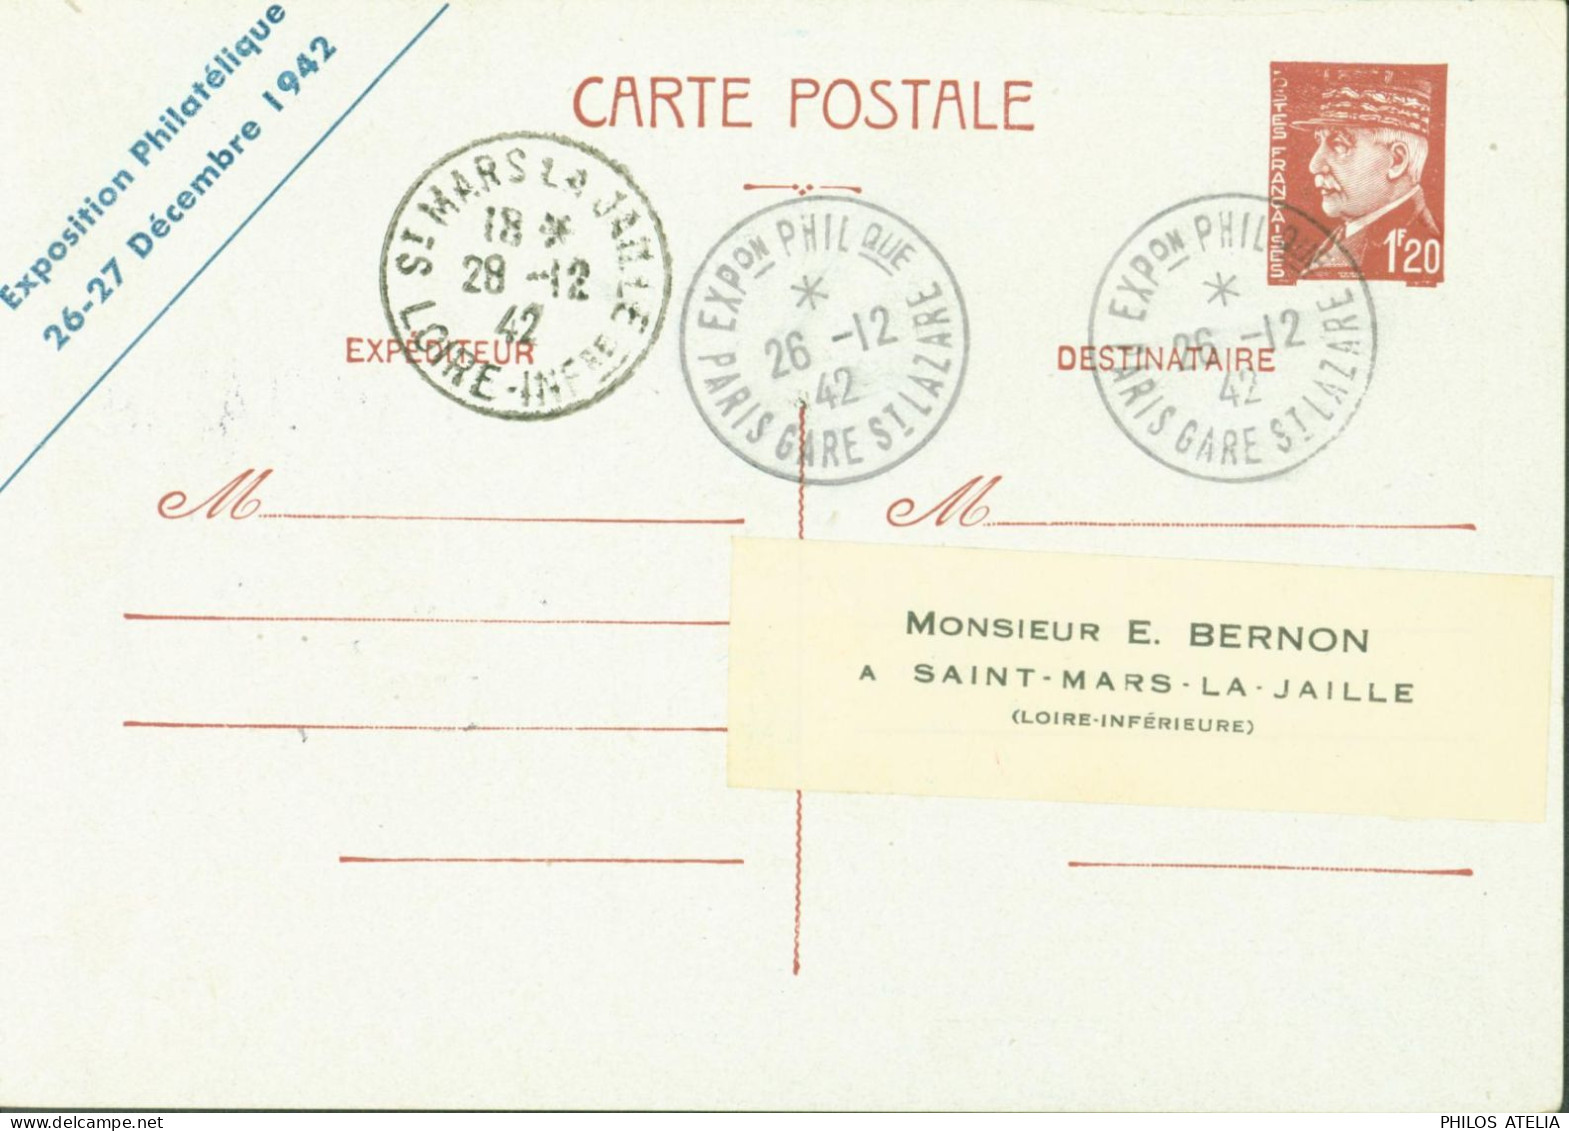 Entier Pétain 1,20 CP Repiquage Exposition Philatélique 26 27 12 1942 Les Cheminots Philatélistes YT Colis Postal 187a - Bijgewerkte Postkaarten  (voor 1995)